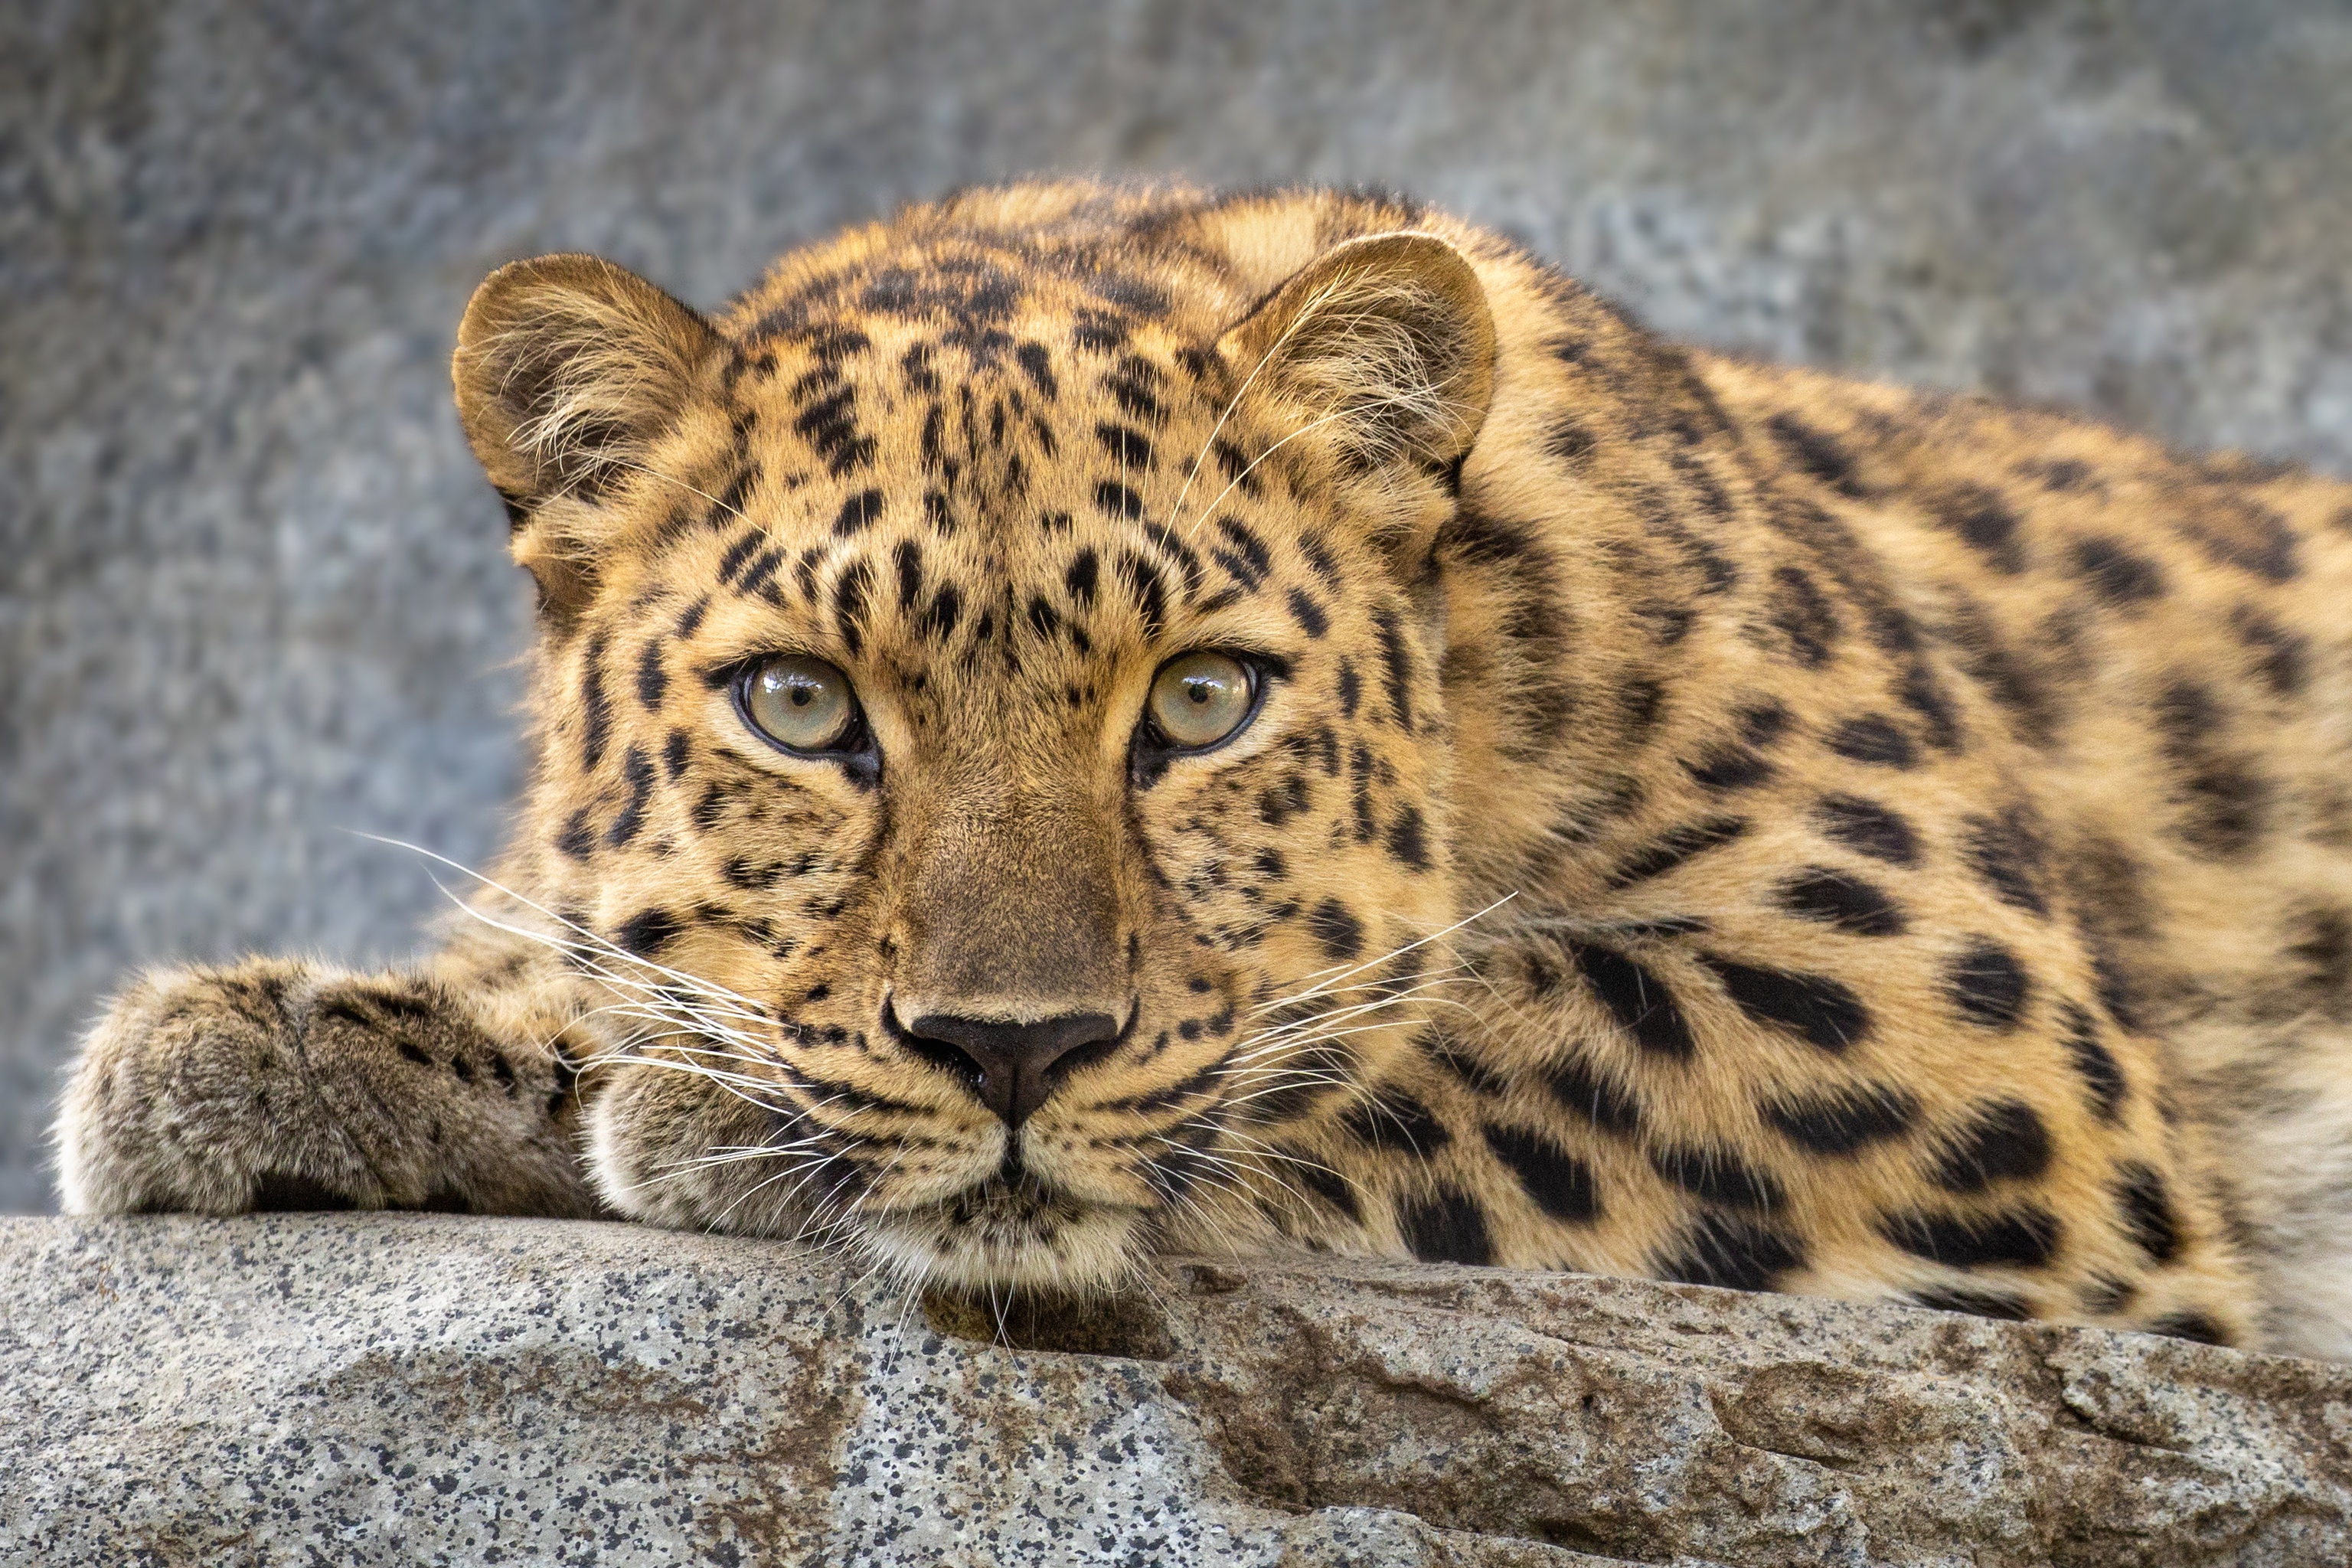 Скачать обои бесплатно Животные, Леопард, Кошки картинка на рабочий стол ПК